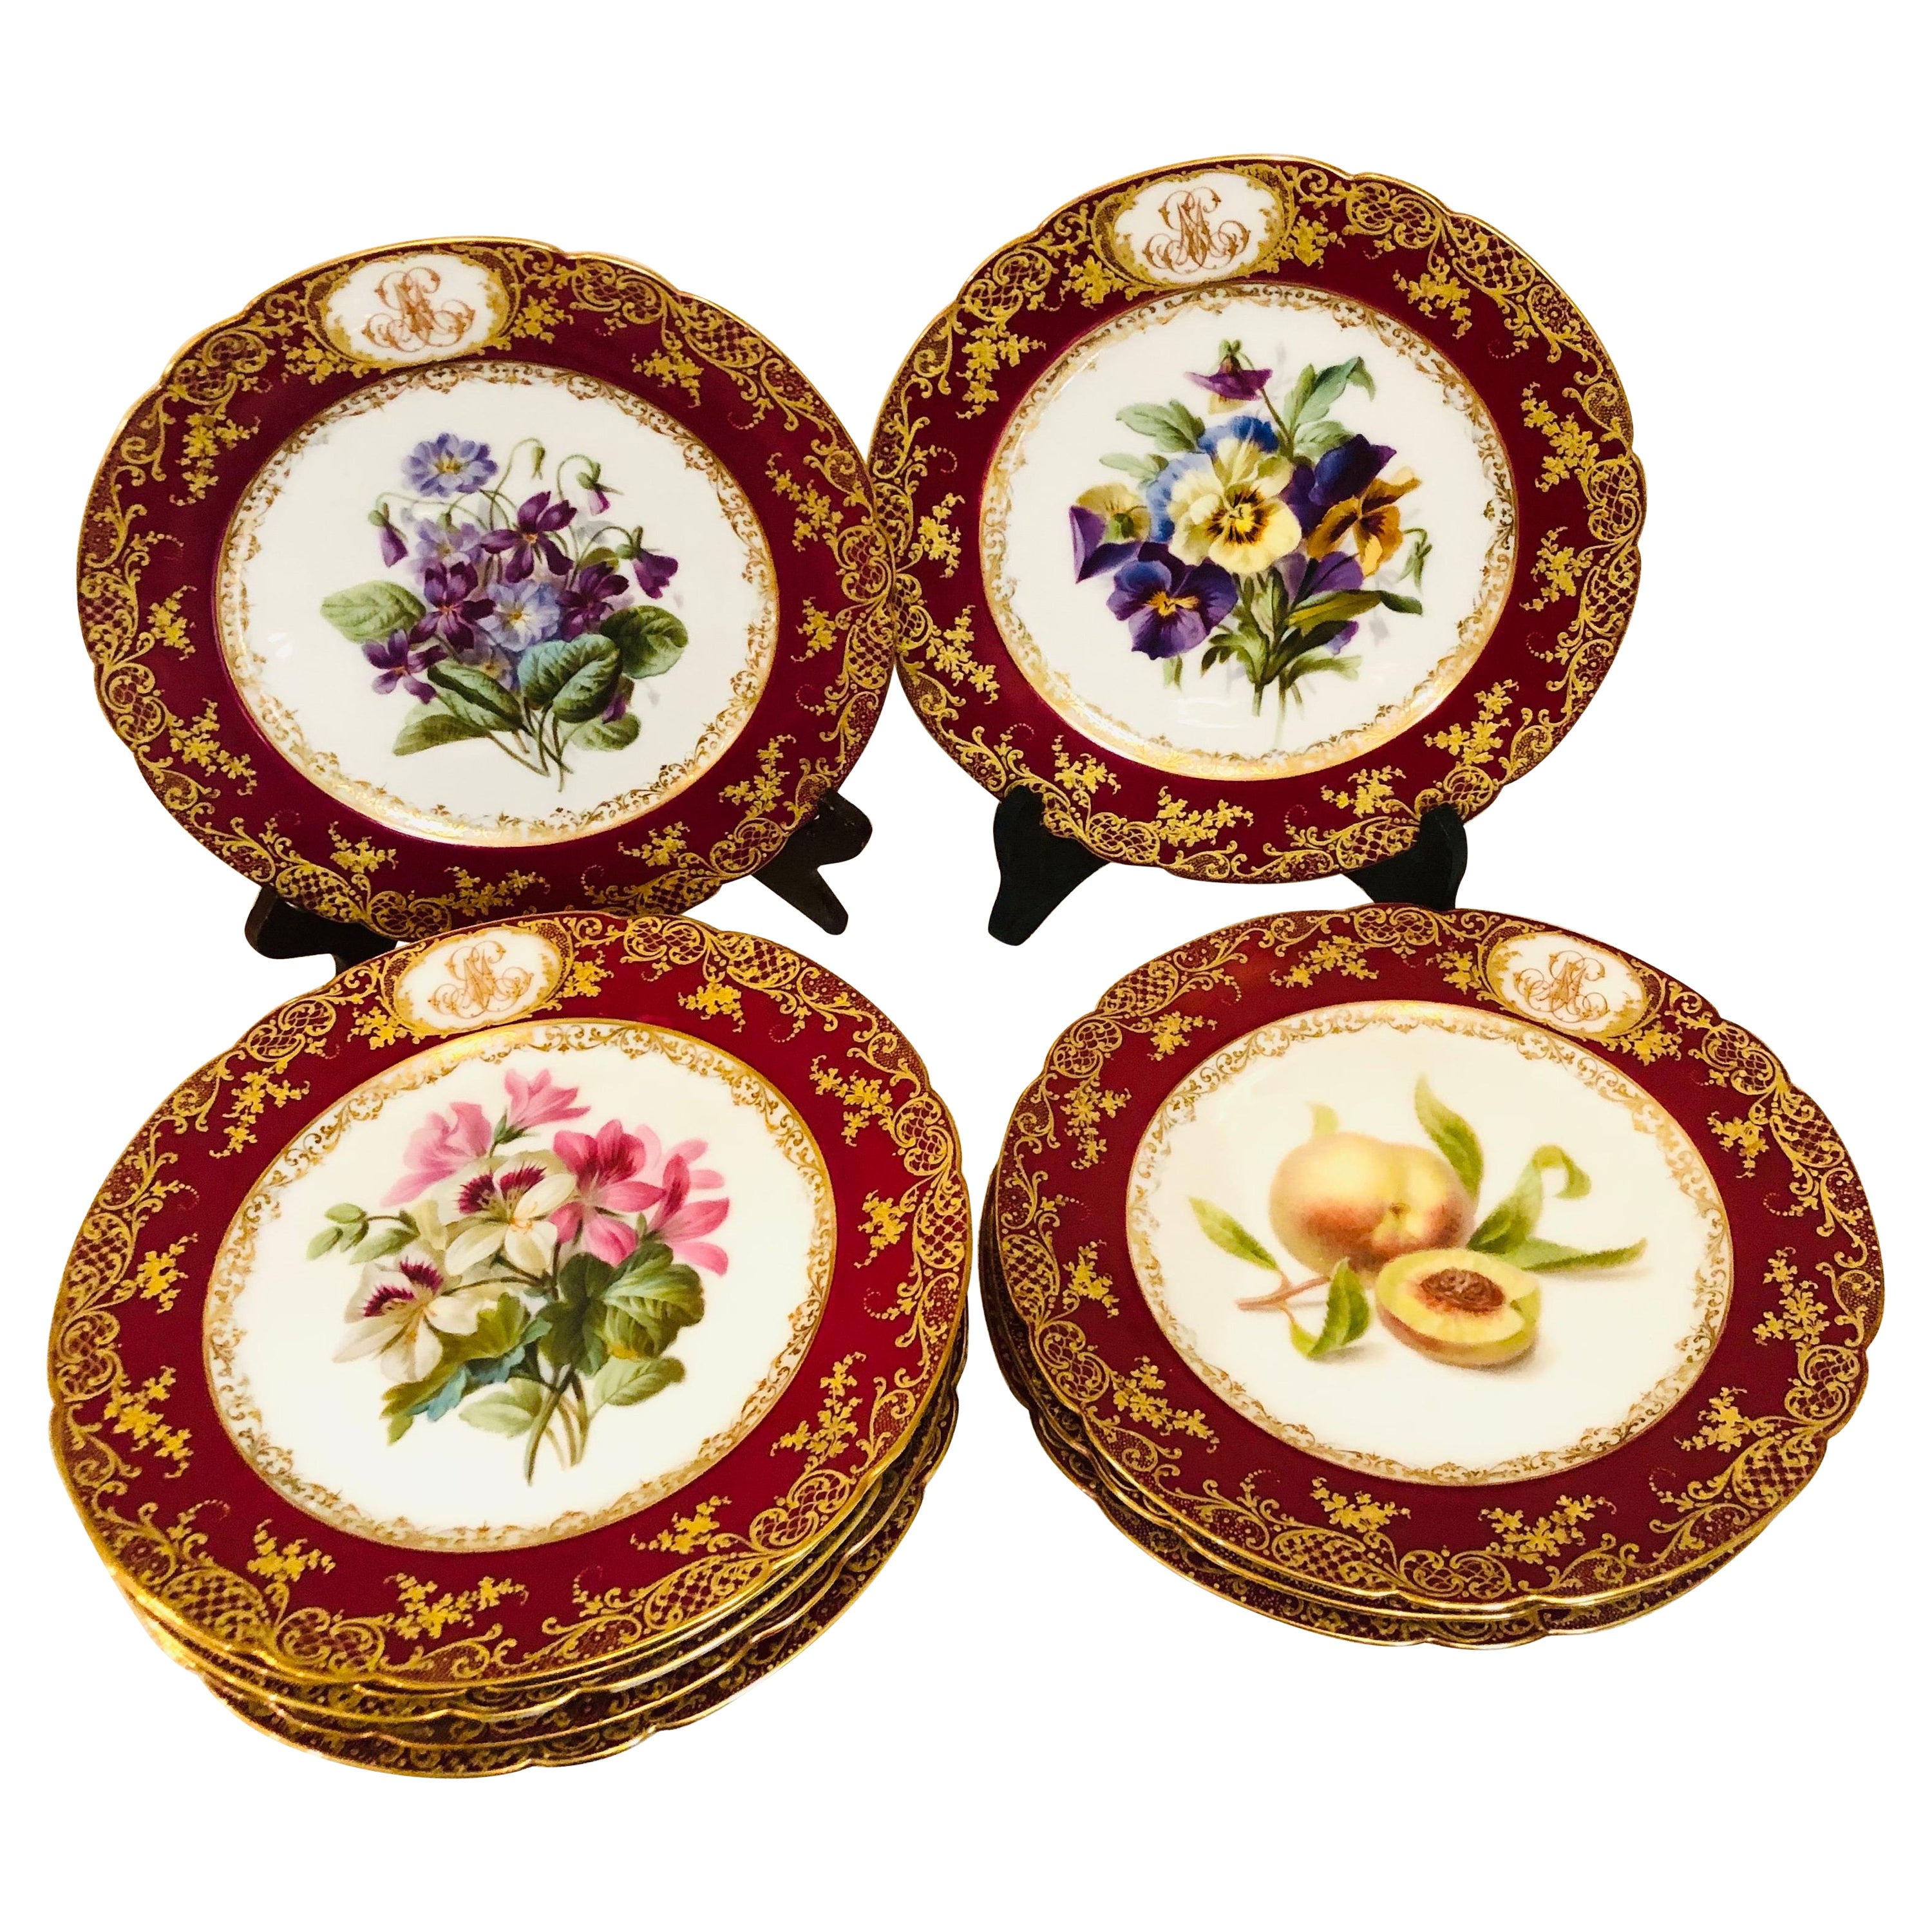 Dix assiettes en porcelaine de Paris peintes chacune avec des bouquets de fleurs et des fruits différents